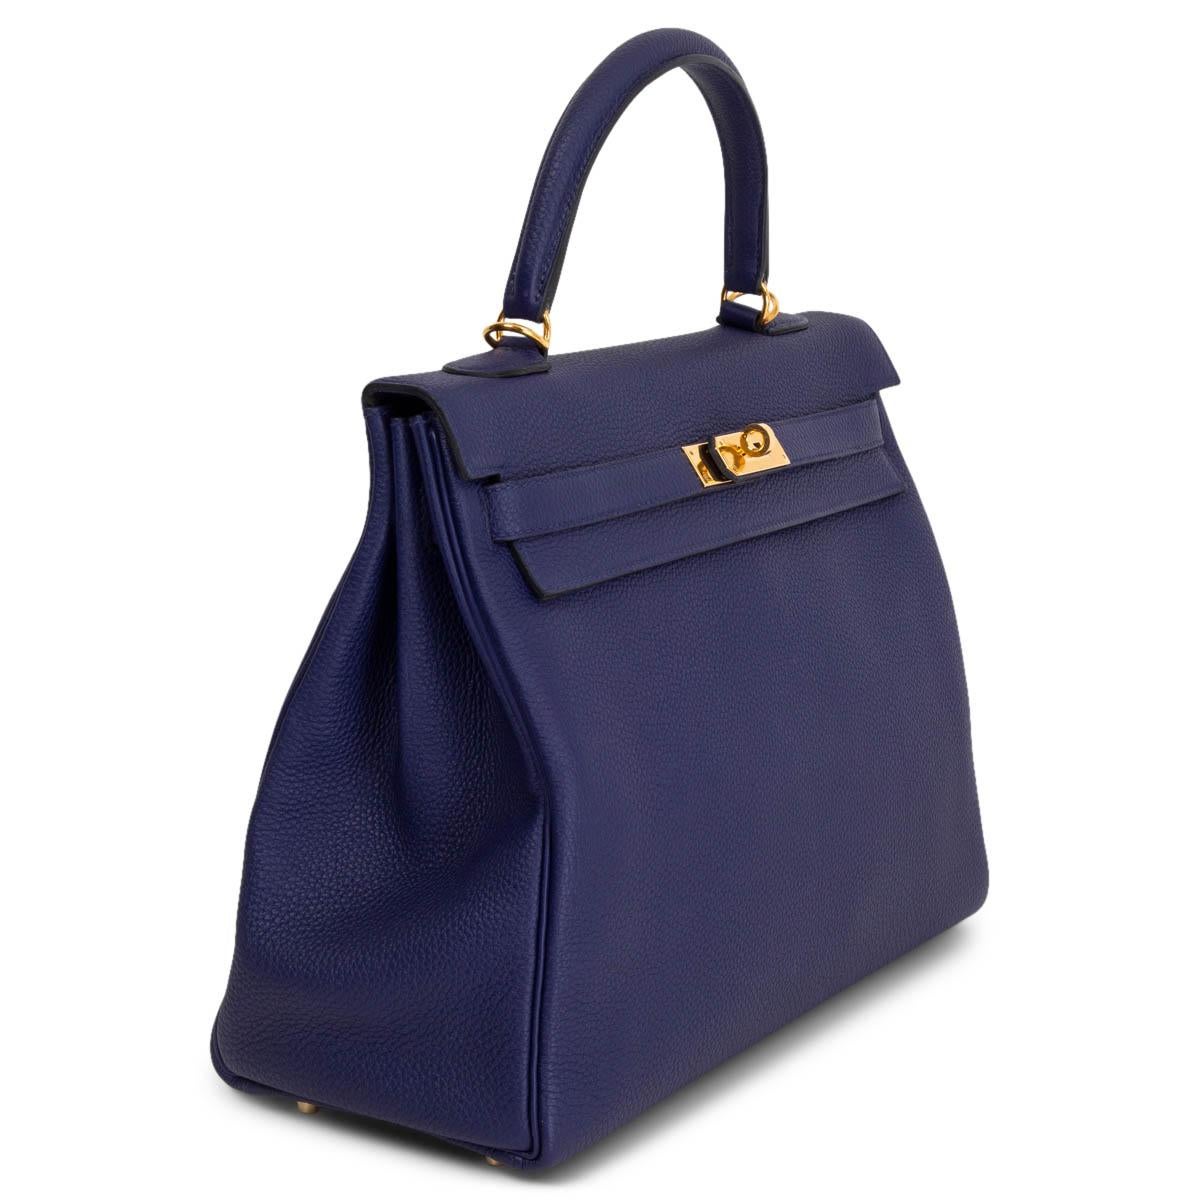 100% authentique Hermès Kelly 35 sac à bandoulière en cuir Bleu Encre Togo avec matériel doré. Doublé en cuir de chèvre Bleu Saphir avec deux poches ouvertes à l'avant et une poche zippée à l'arrière. A été porté avec des signes d'utilisation